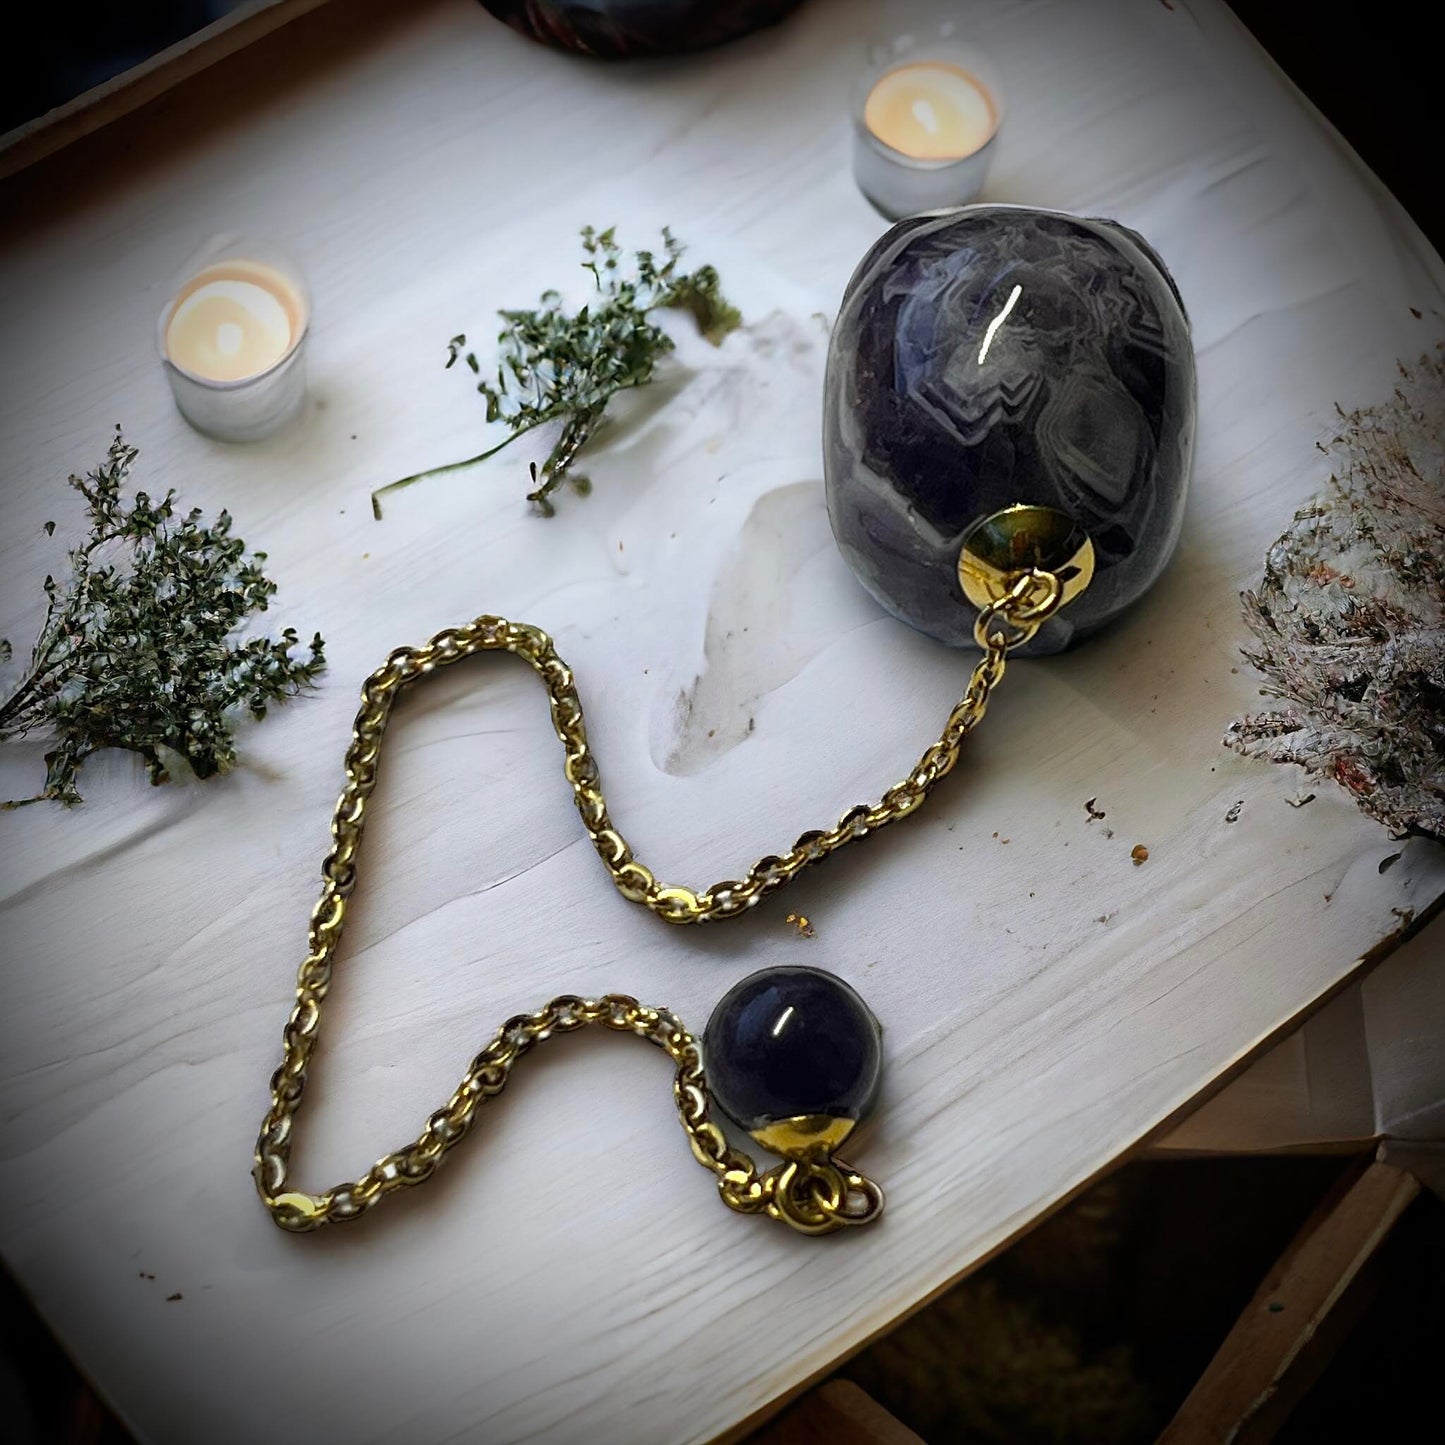 Gemstone Pendulum Skull Amethyst Curiosity, Oddity, Spells, Unique Gift Idea, Witchcraft, Rituals, Spirit Boards, Quartz